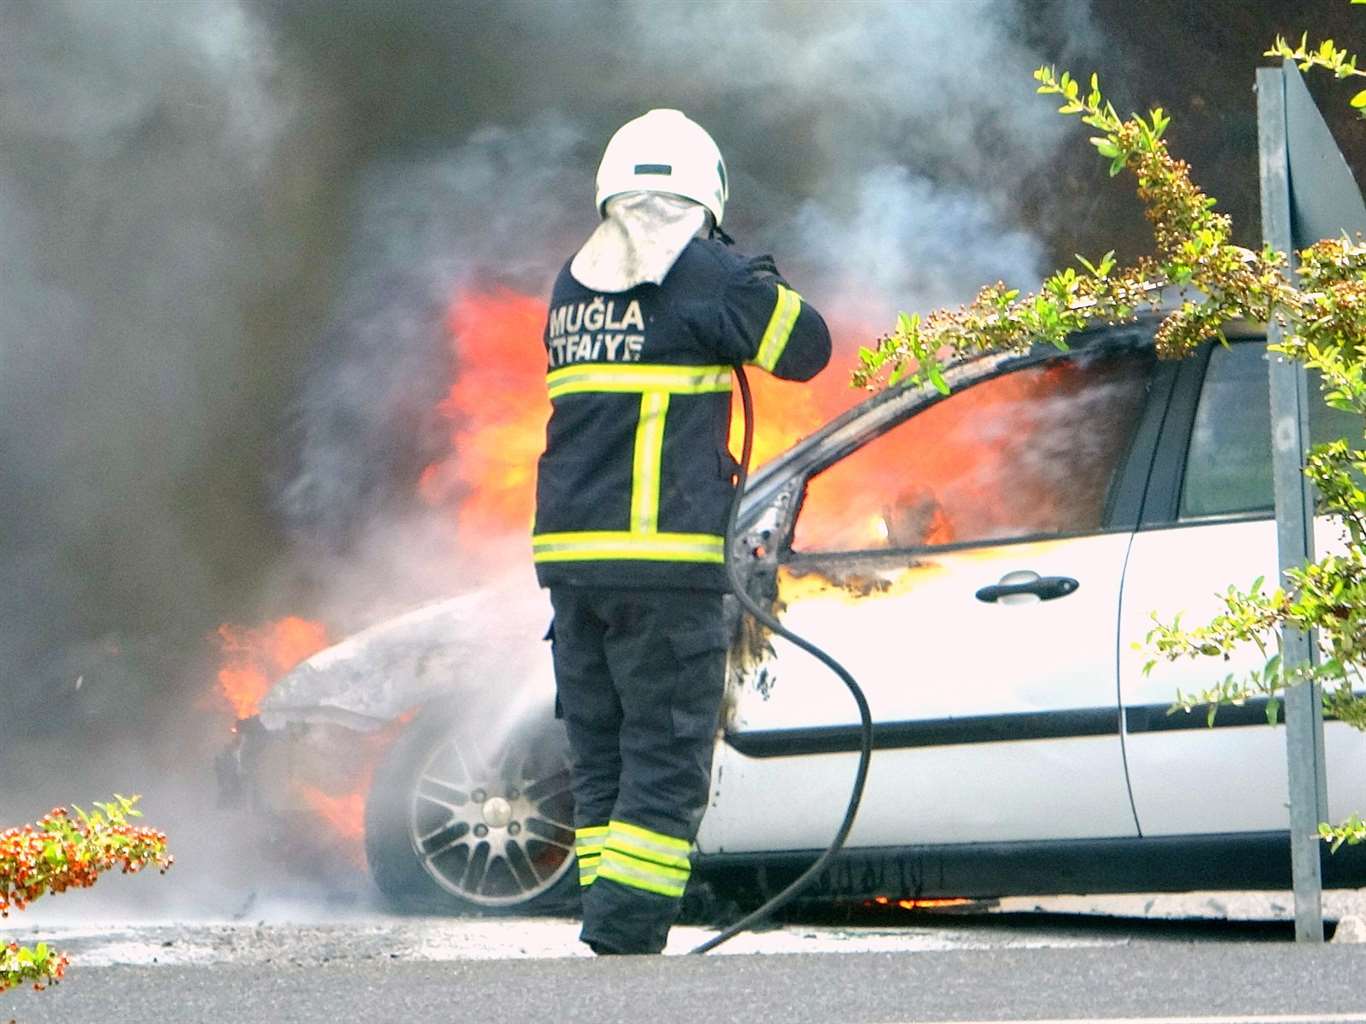       Polis kontrol noktasında yanan araç söndürüldü haberi